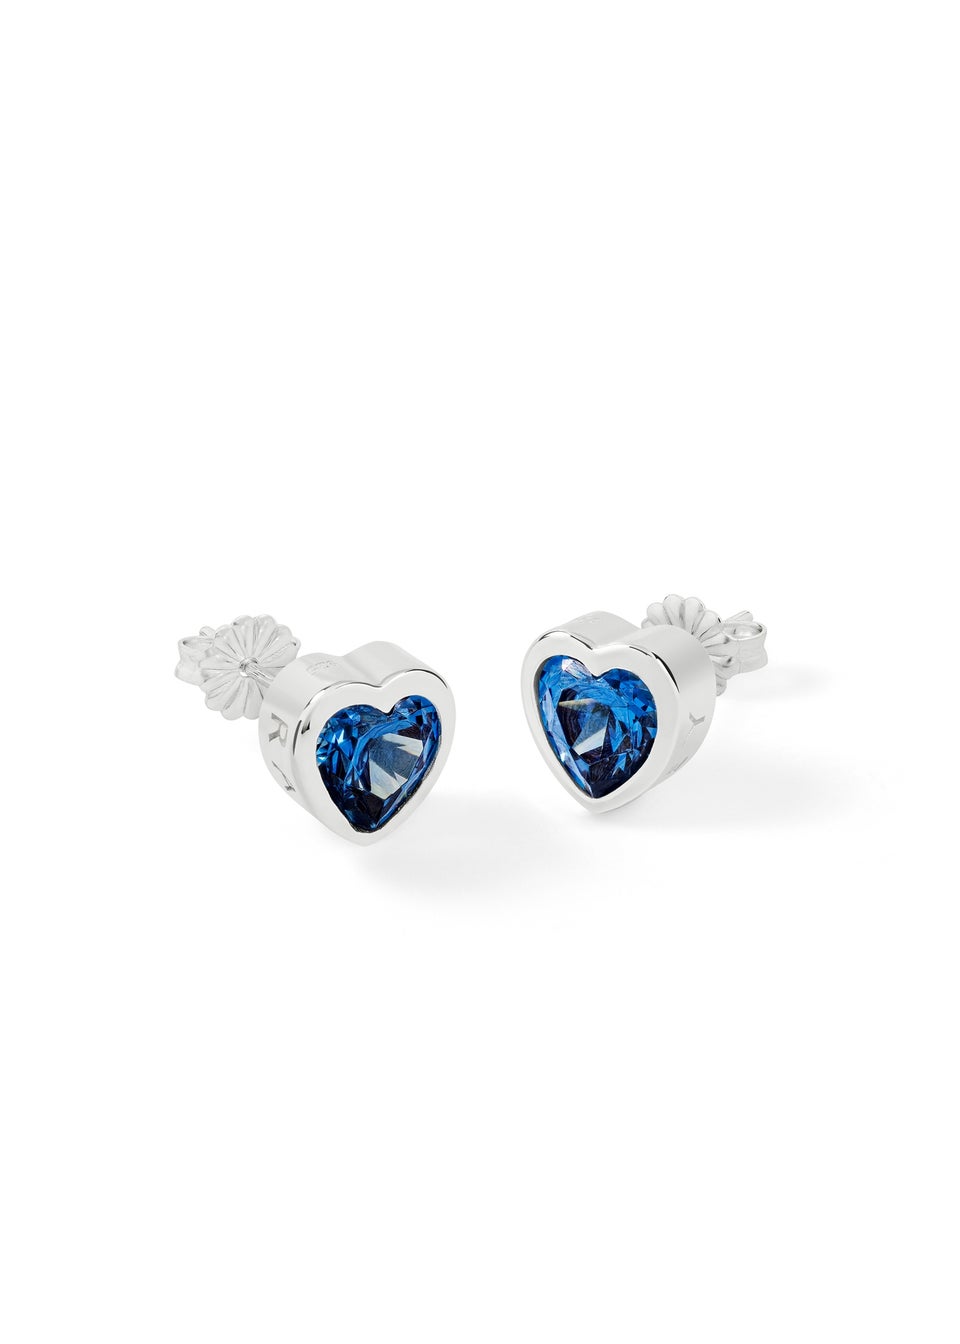 Radley London Silver Sterling Blue Stone Heart Stud Earrings